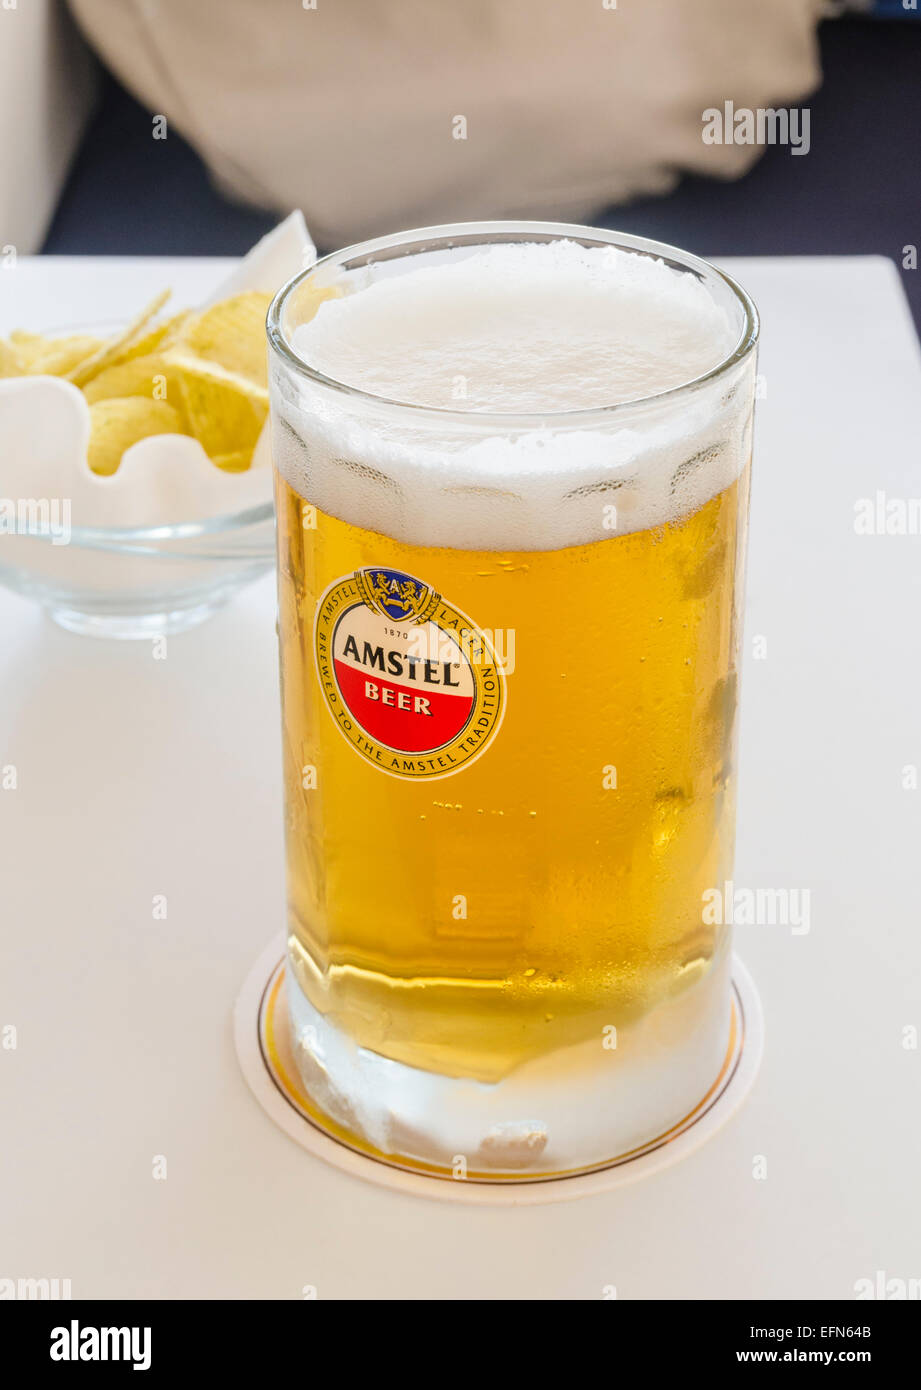 Amstel beer mug et chips snack sur une table Banque D'Images